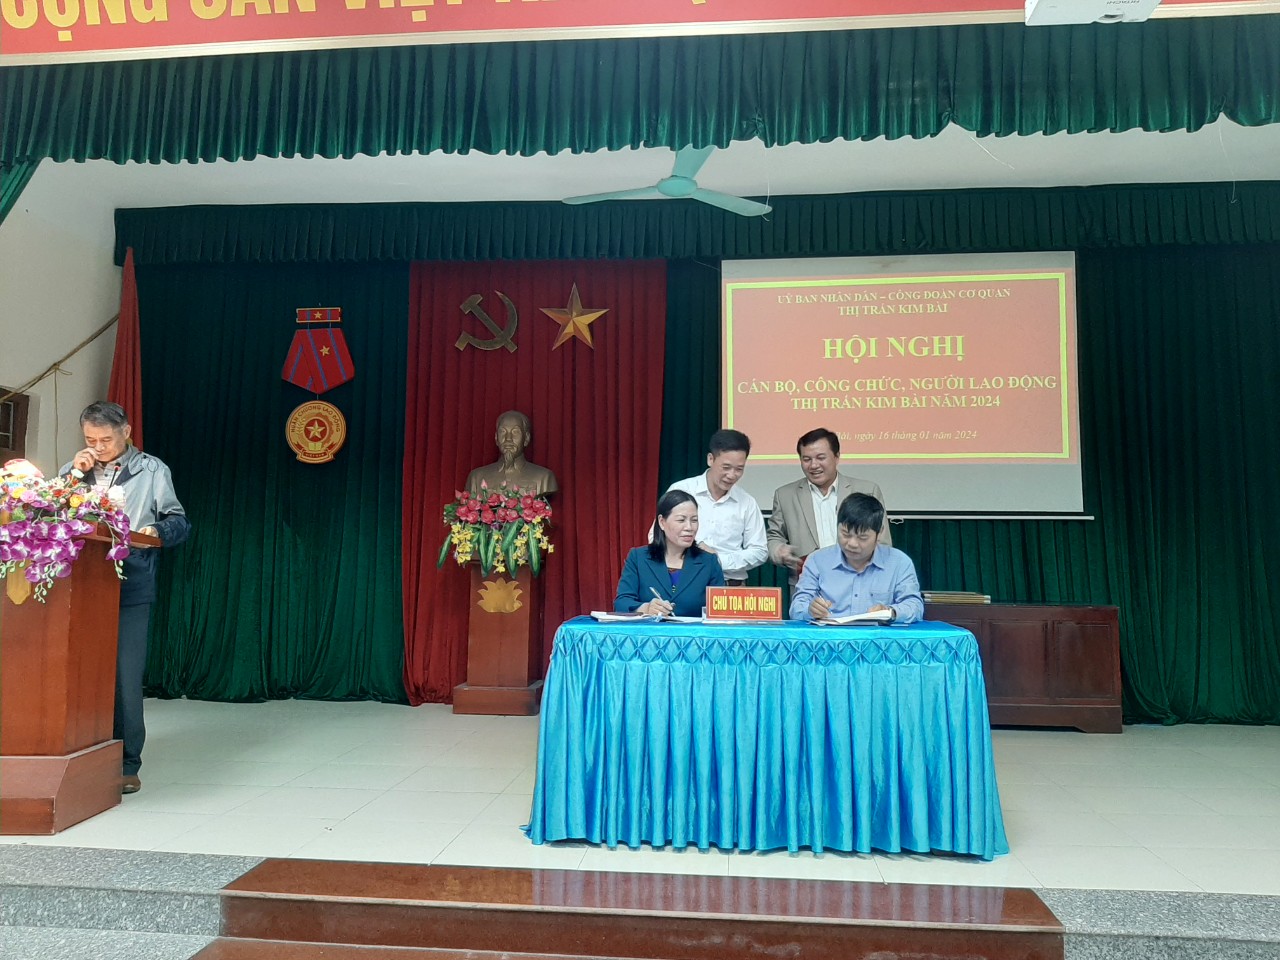 Hội nghị Cán bộ, công chức, người lao động thị trấn Kim Bài năm 2024